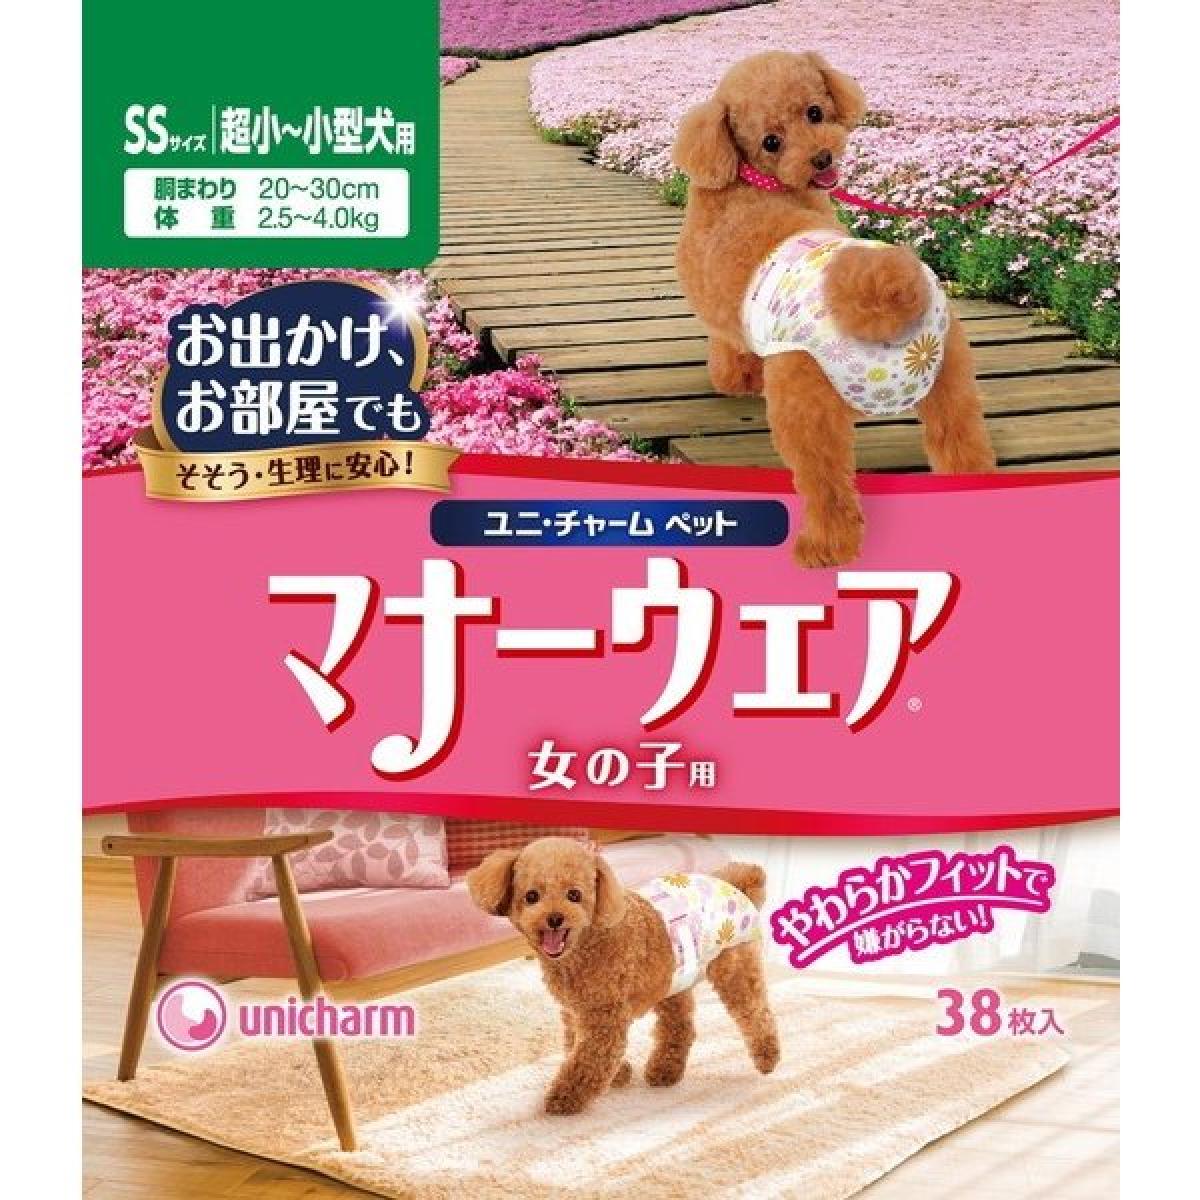 マナーウェア 犬用 おむつ 女の子用 SSサイズ 超小型 小型犬用 ピンク